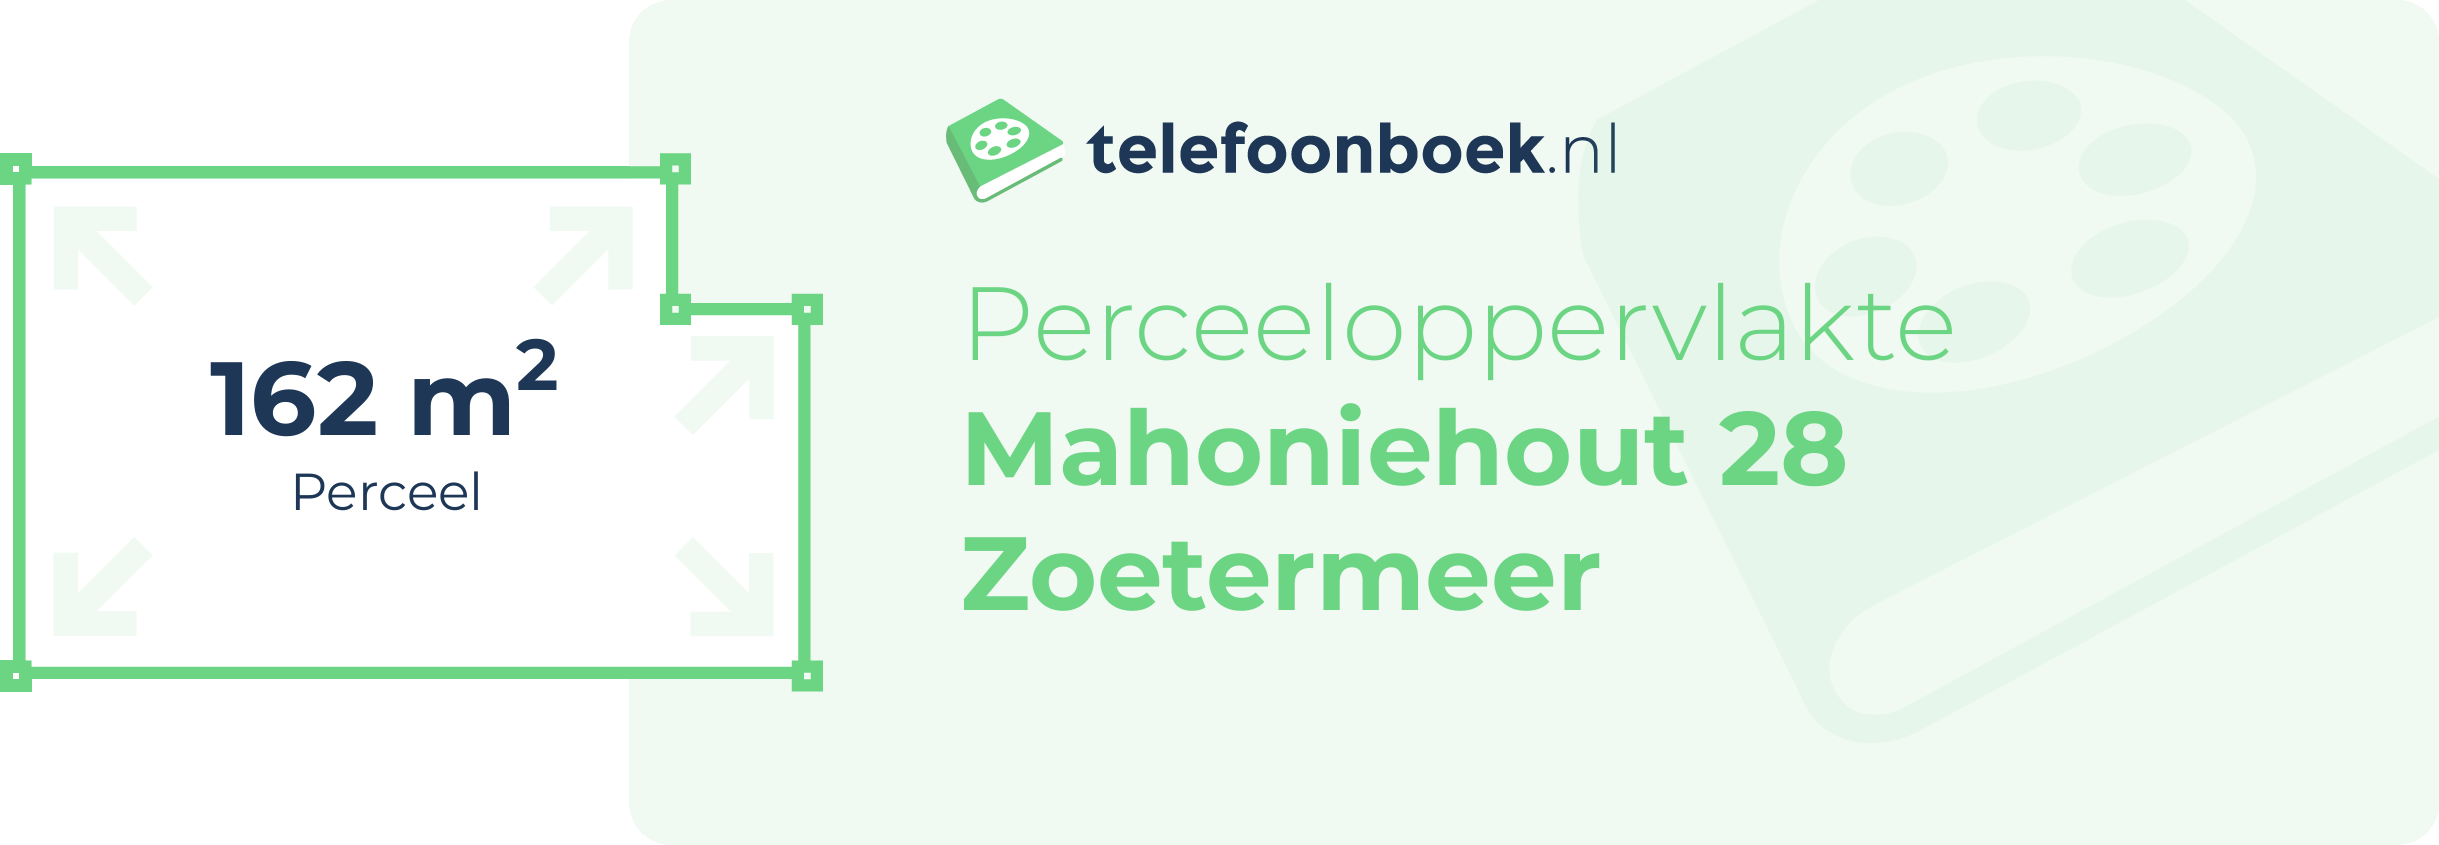 Perceeloppervlakte Mahoniehout 28 Zoetermeer